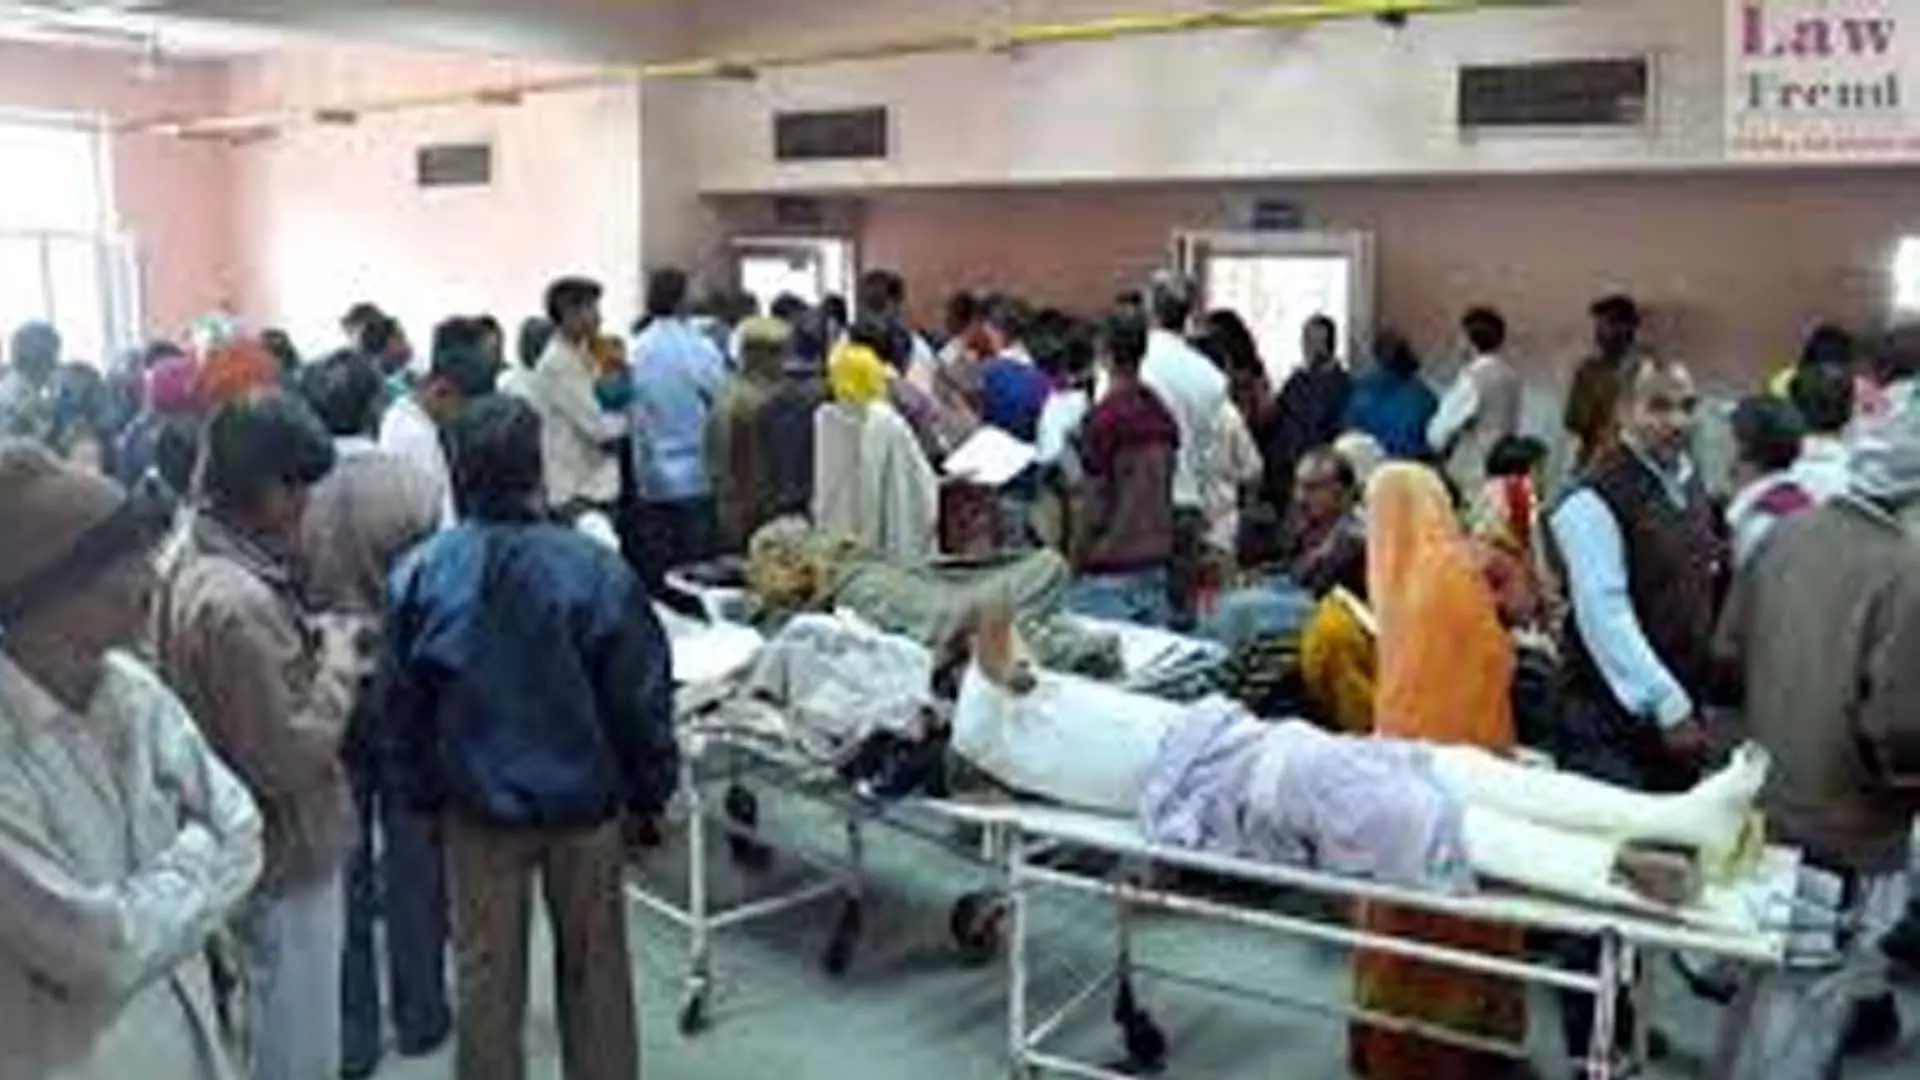 दिल्ली सरकार की स्वास्थ्य सुविधाओं में दवाओं और उपभोग्य सामग्रियों की अनुपलब्धता